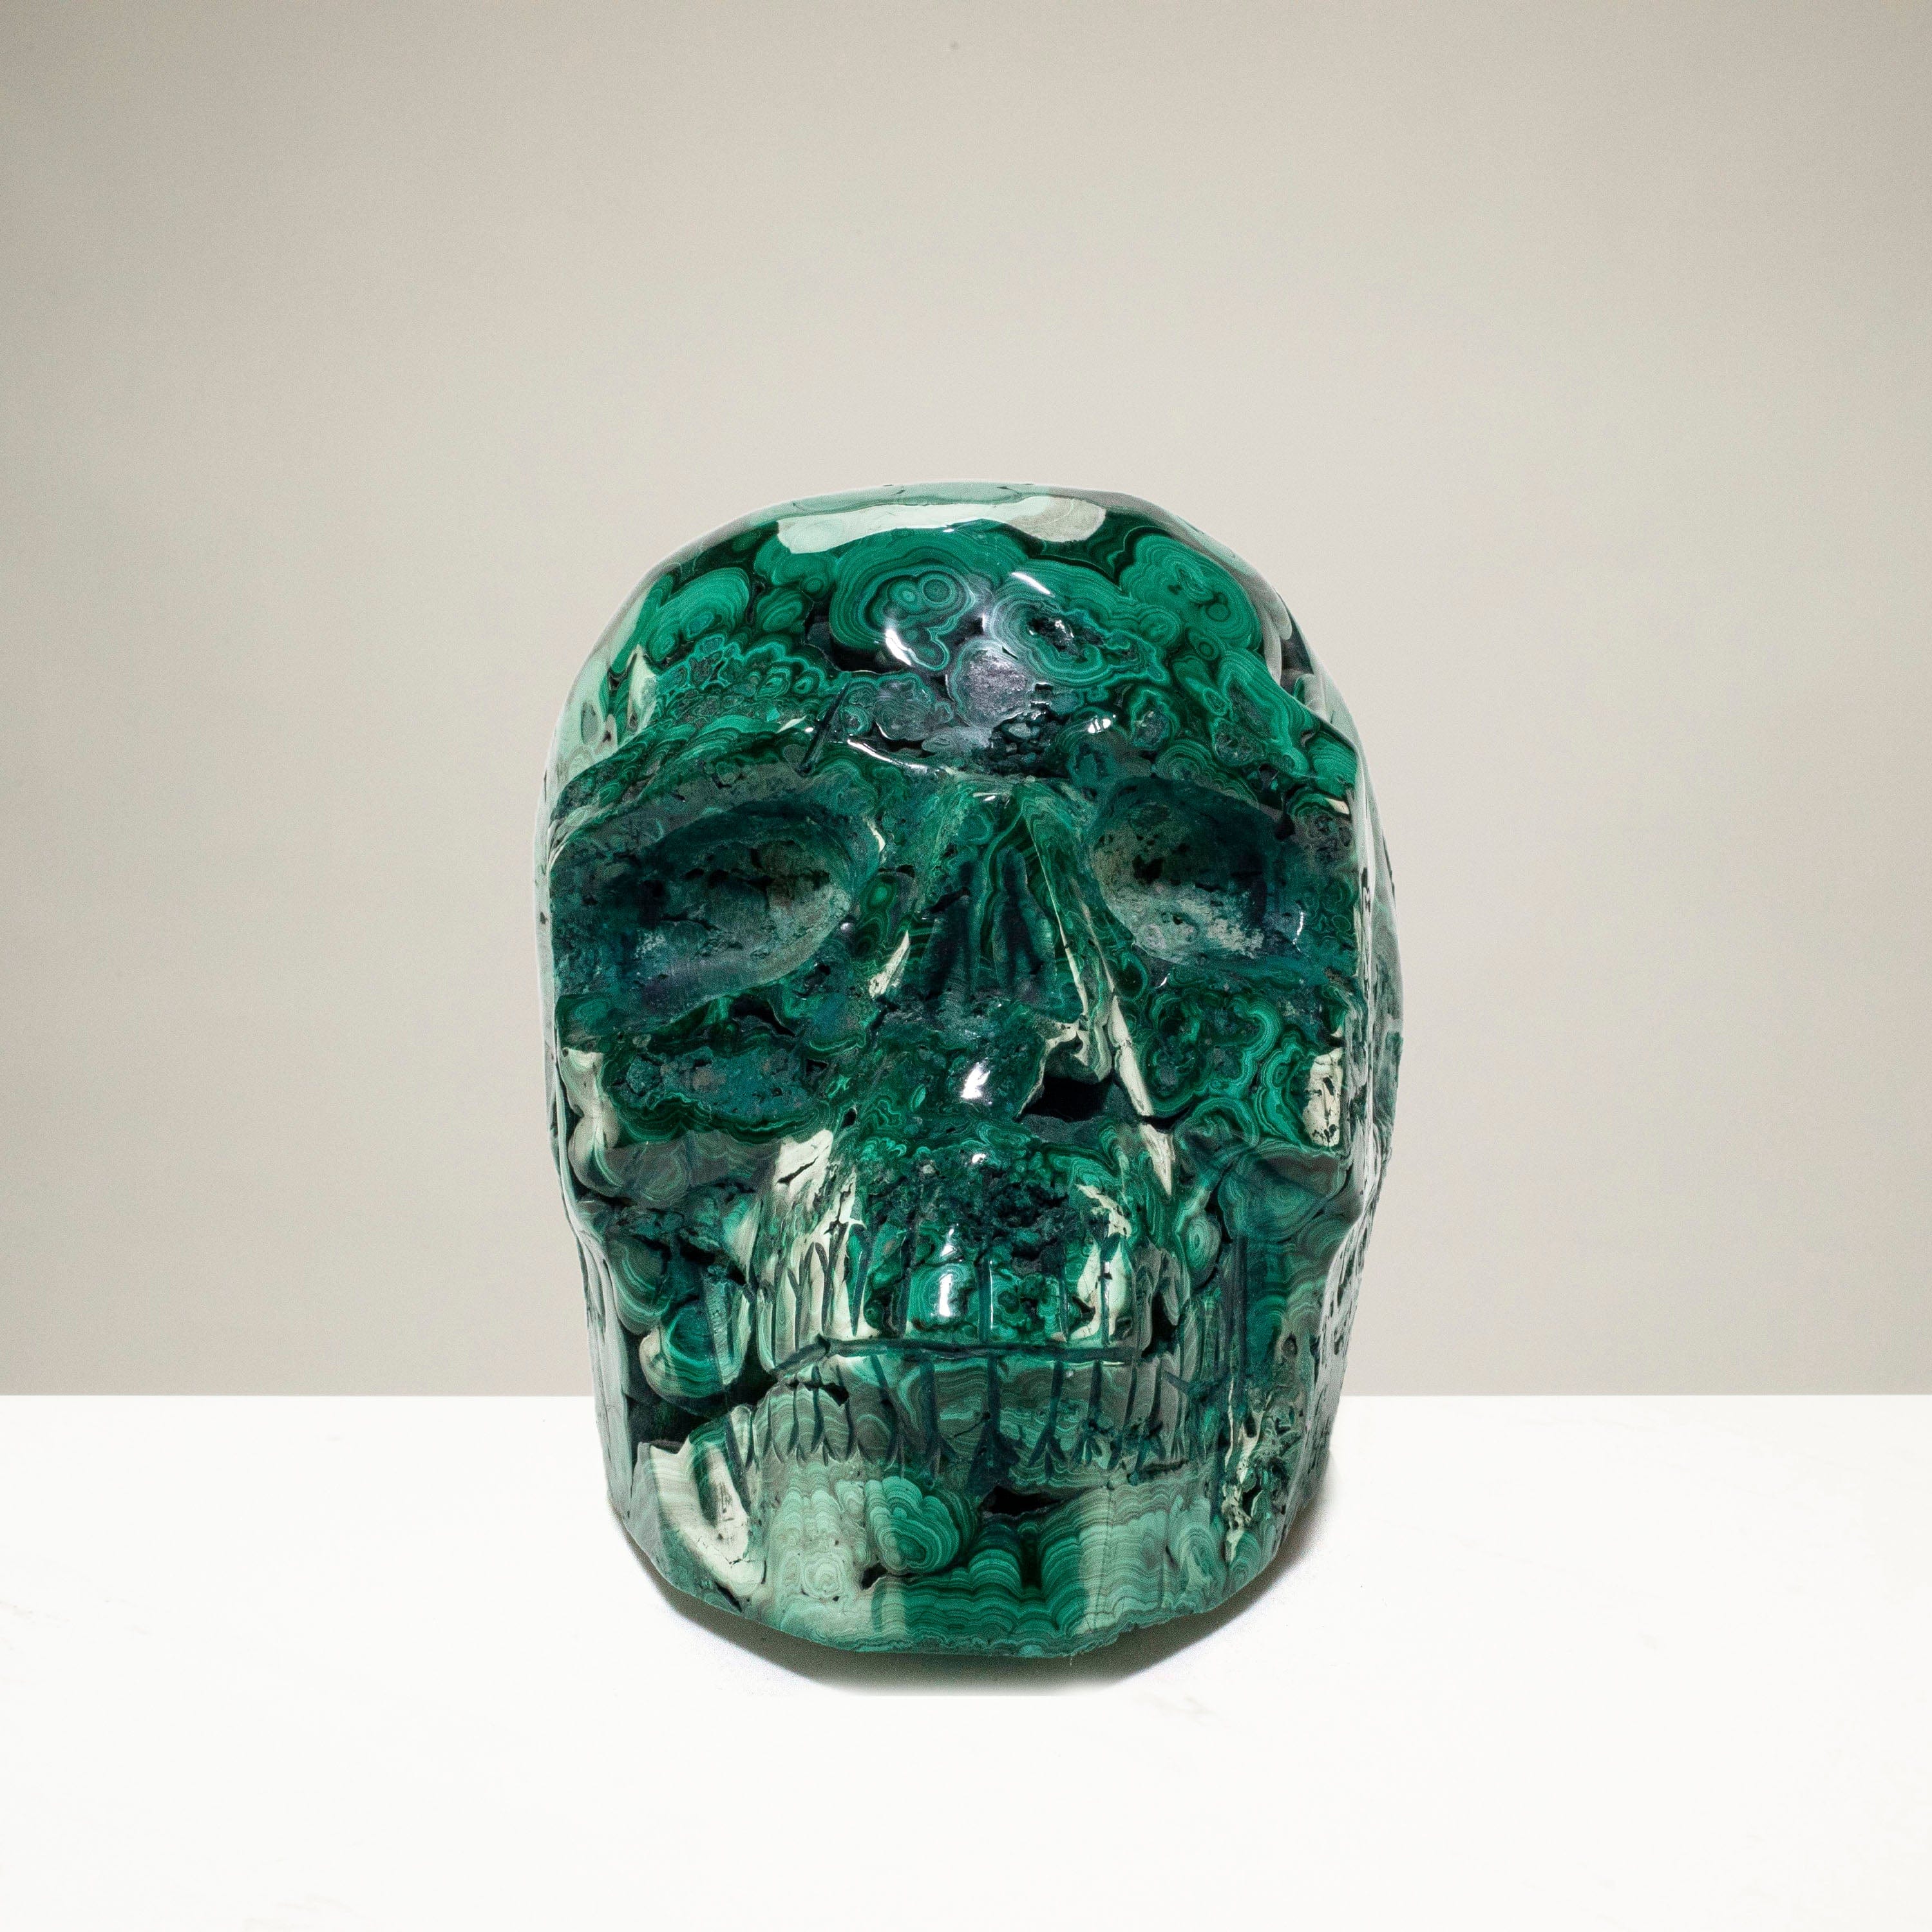 Kalifano Malachite Malachite Skull Carving 6.5" / 3,650g SK12800-MA.001